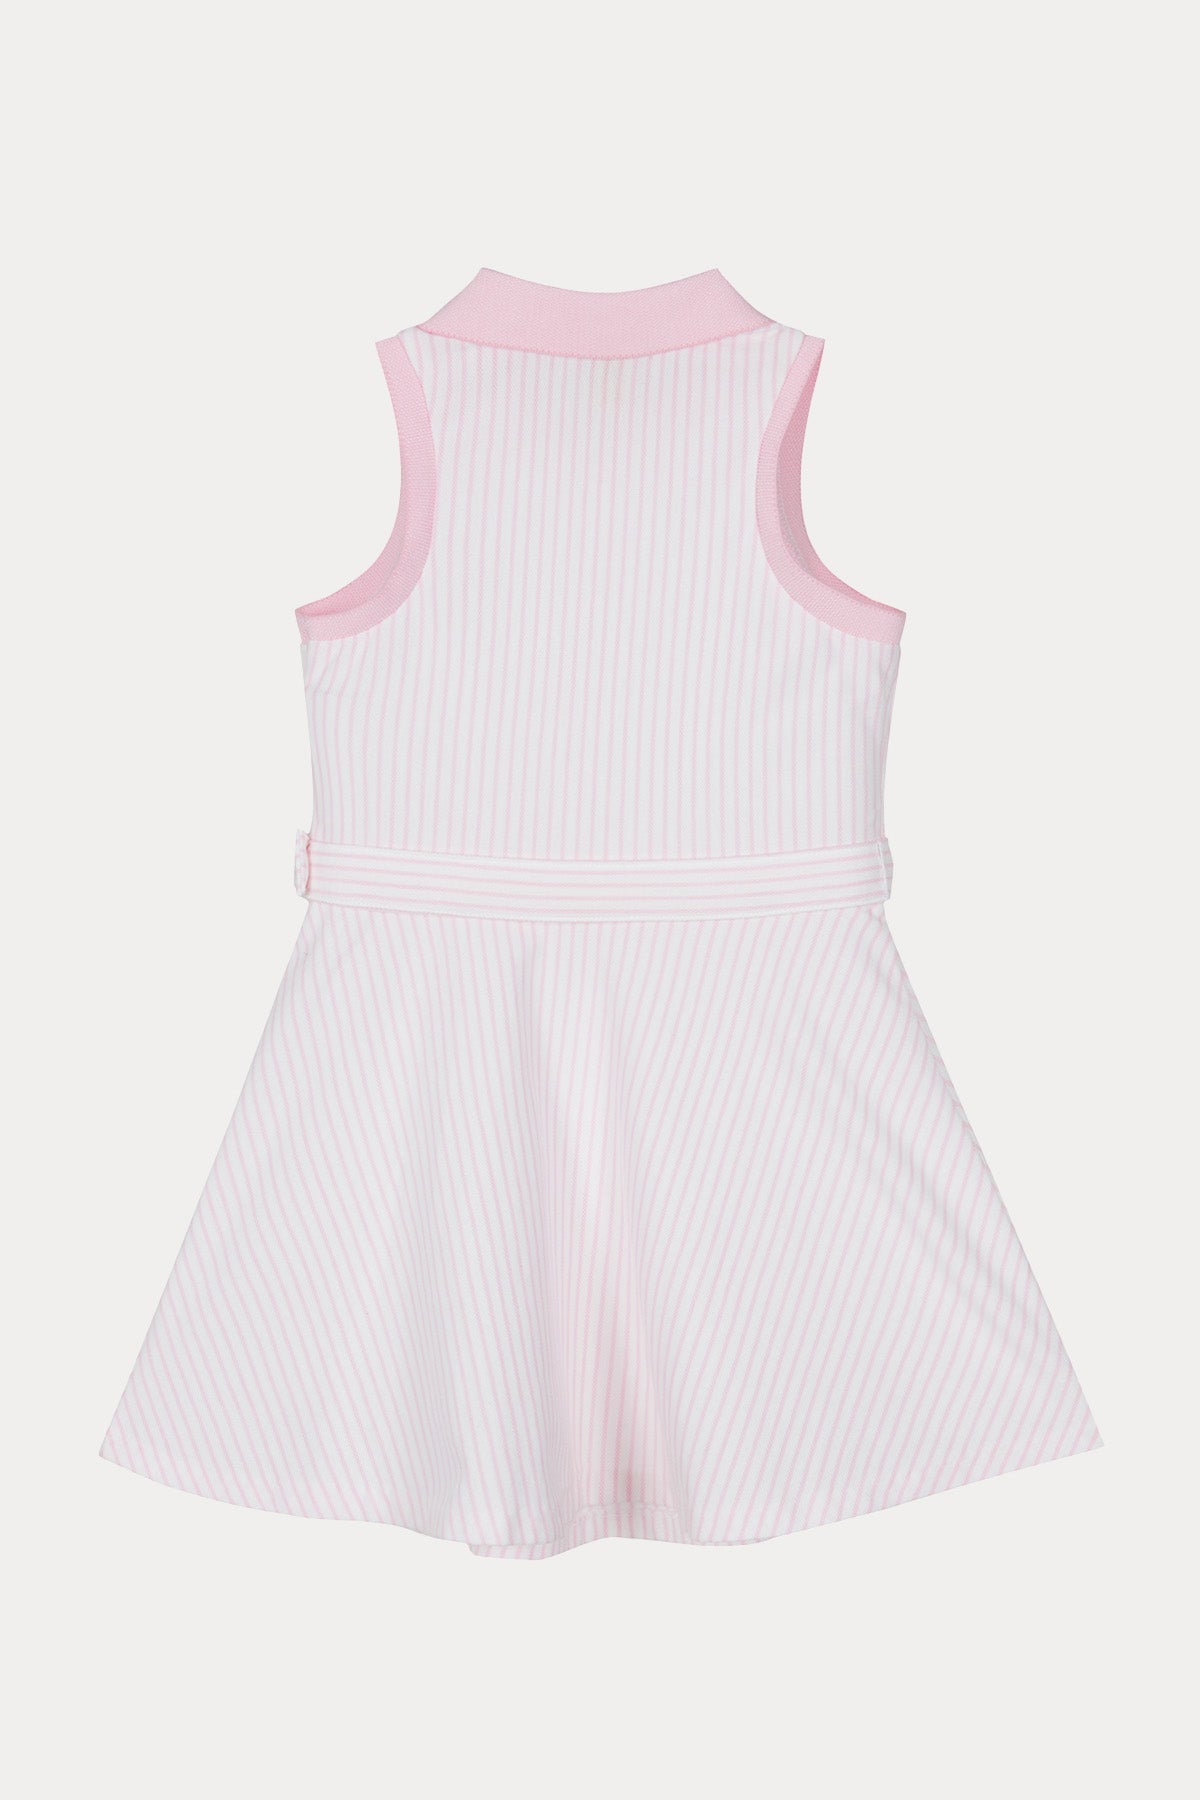 Polo Ralph Lauren Kids 2-4 Yaş Kız Çocuk Kemerli Çizgili Elbise